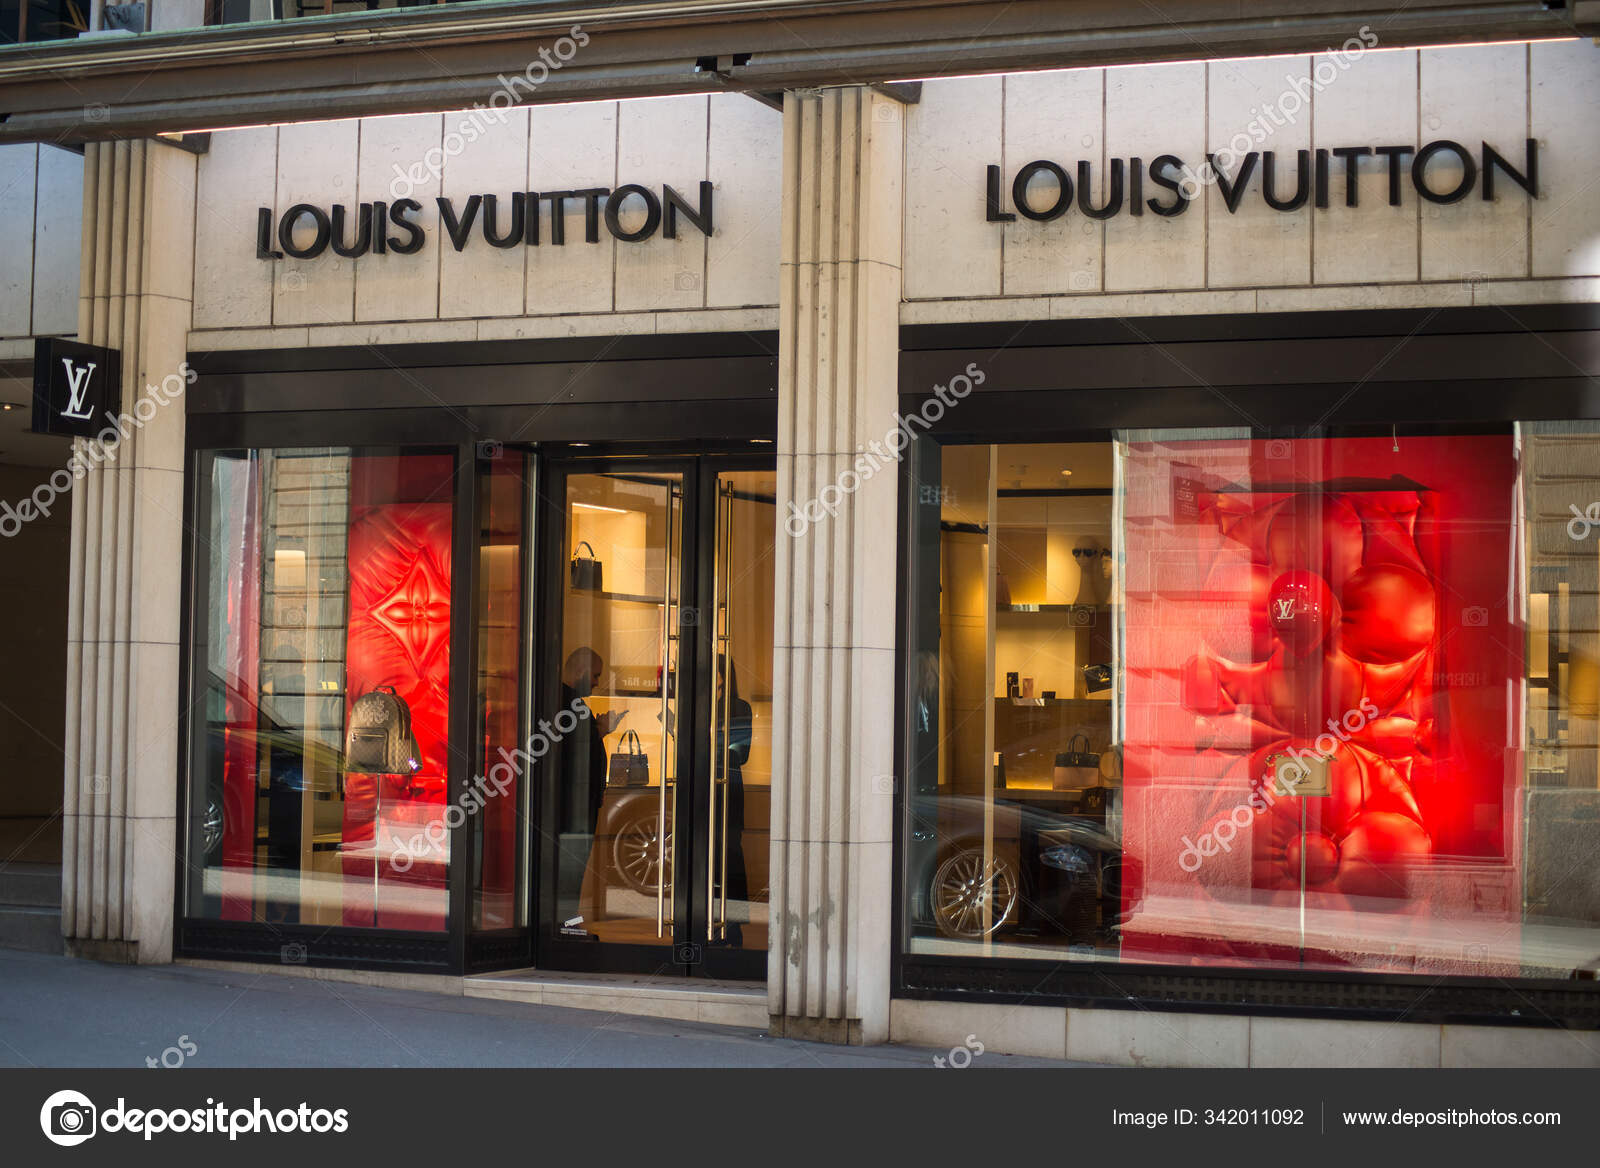 Louis Vuitton Charles de Gaulle T2E Store in Paris, France